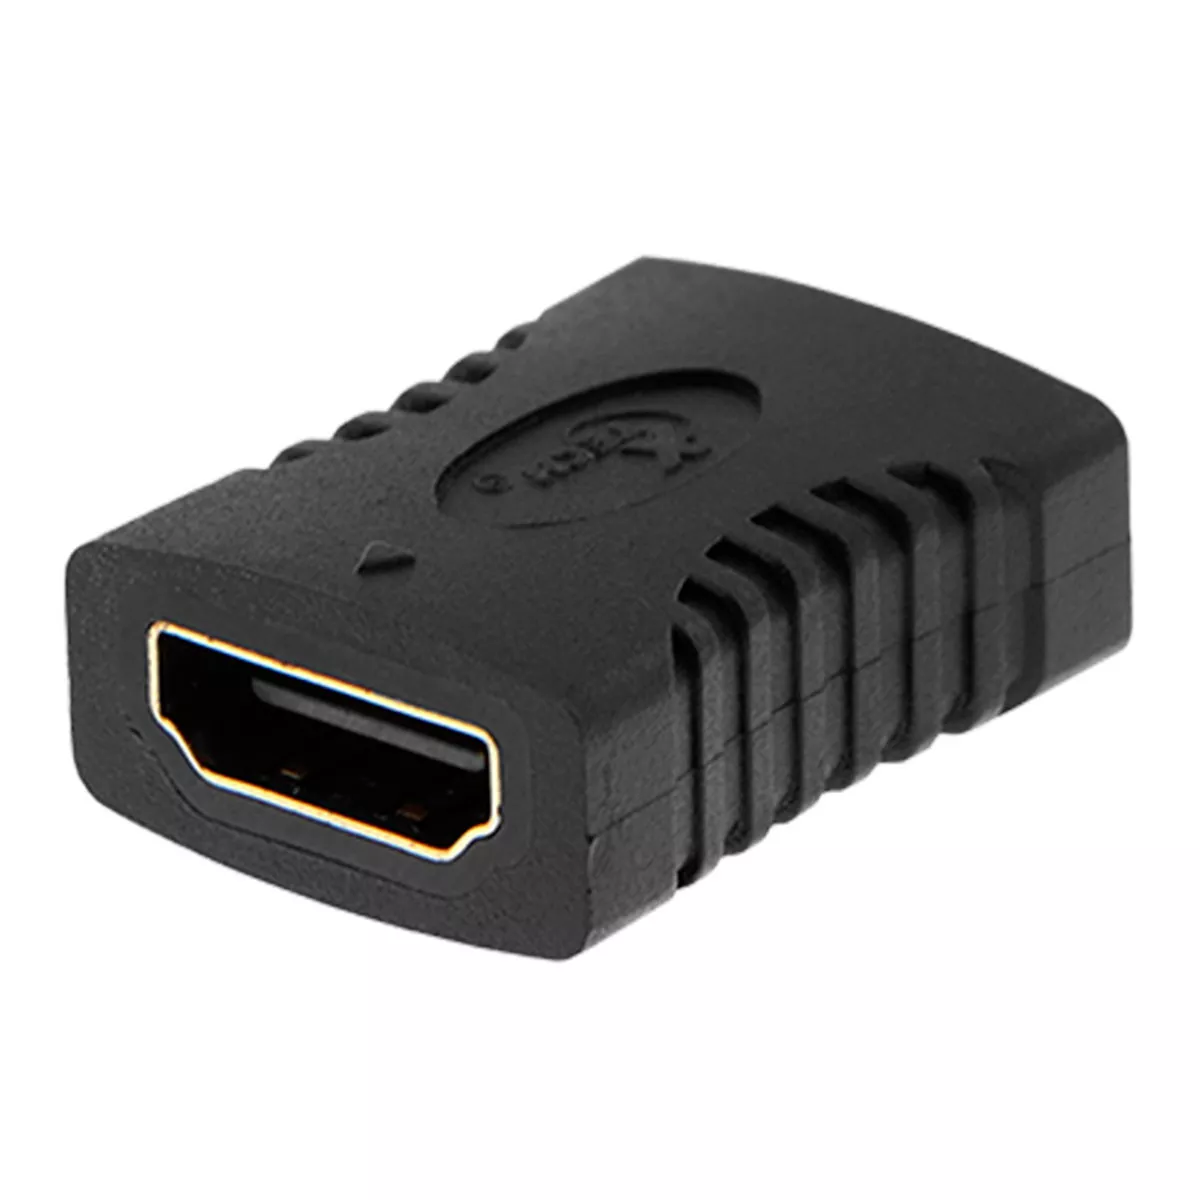 Copla Adaptador HDMI Hembra - Hembra Conecta 2 cables HDMI Juntos - XTC-333